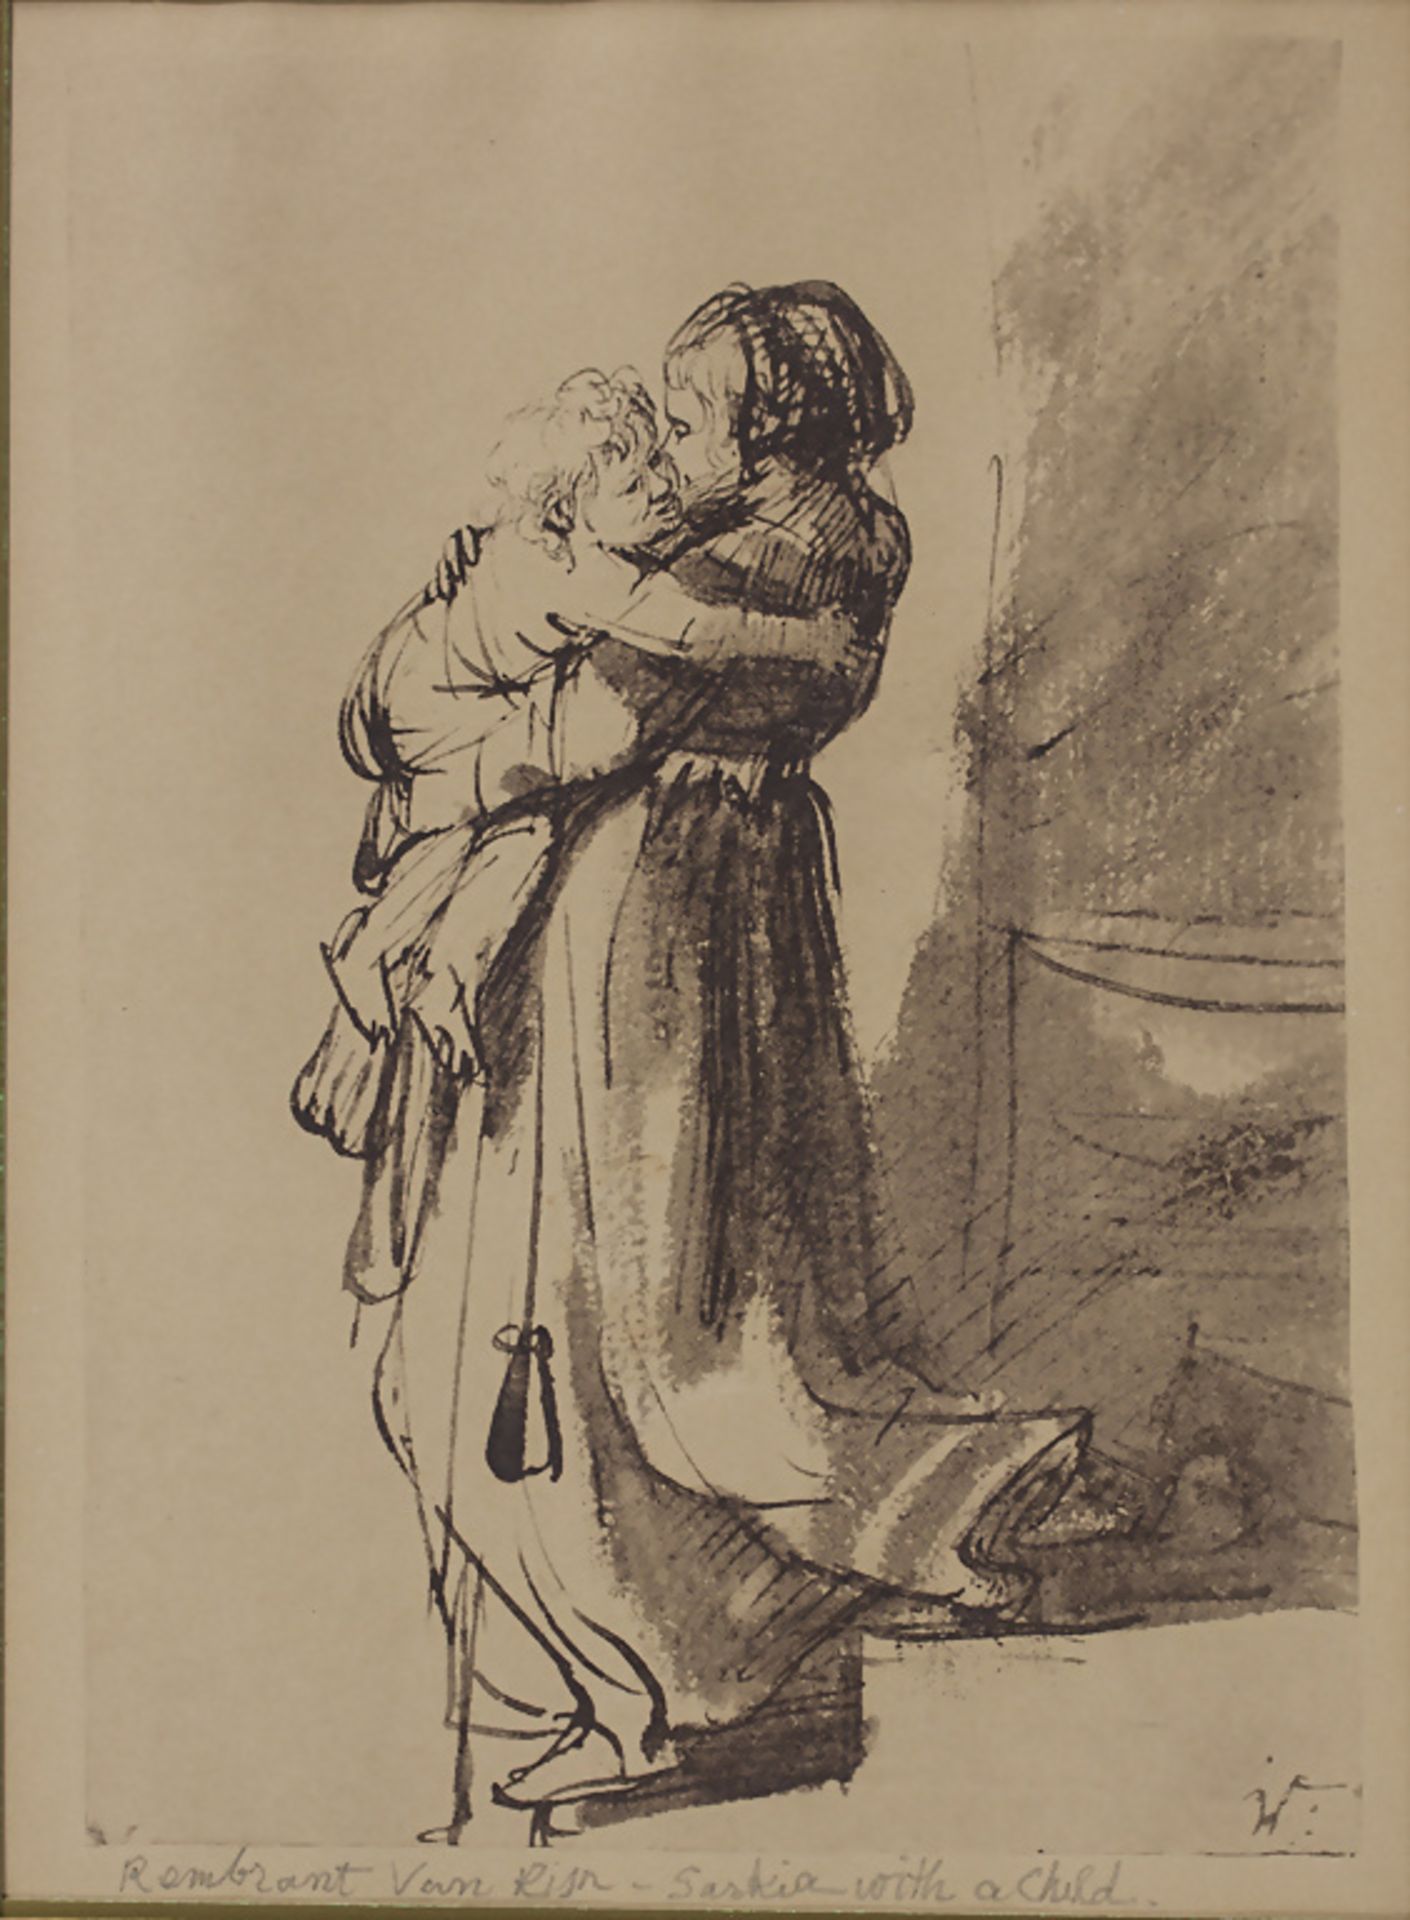 Nach Rembrandt Harmensz. van Rijn (1606-1669), 'Saskia mit Kind, die Treppe heruntergehend'